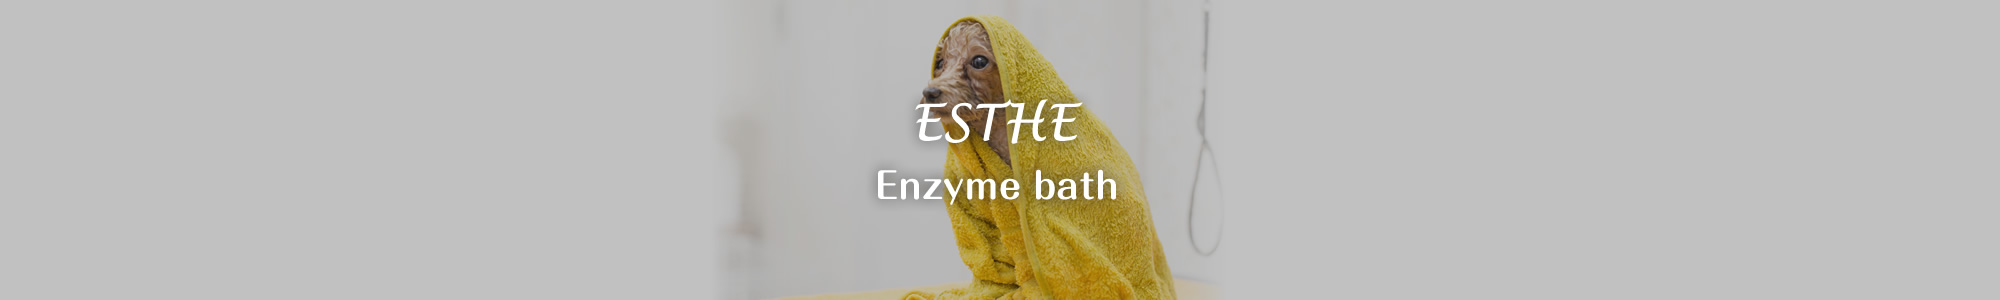 Enzyme bath